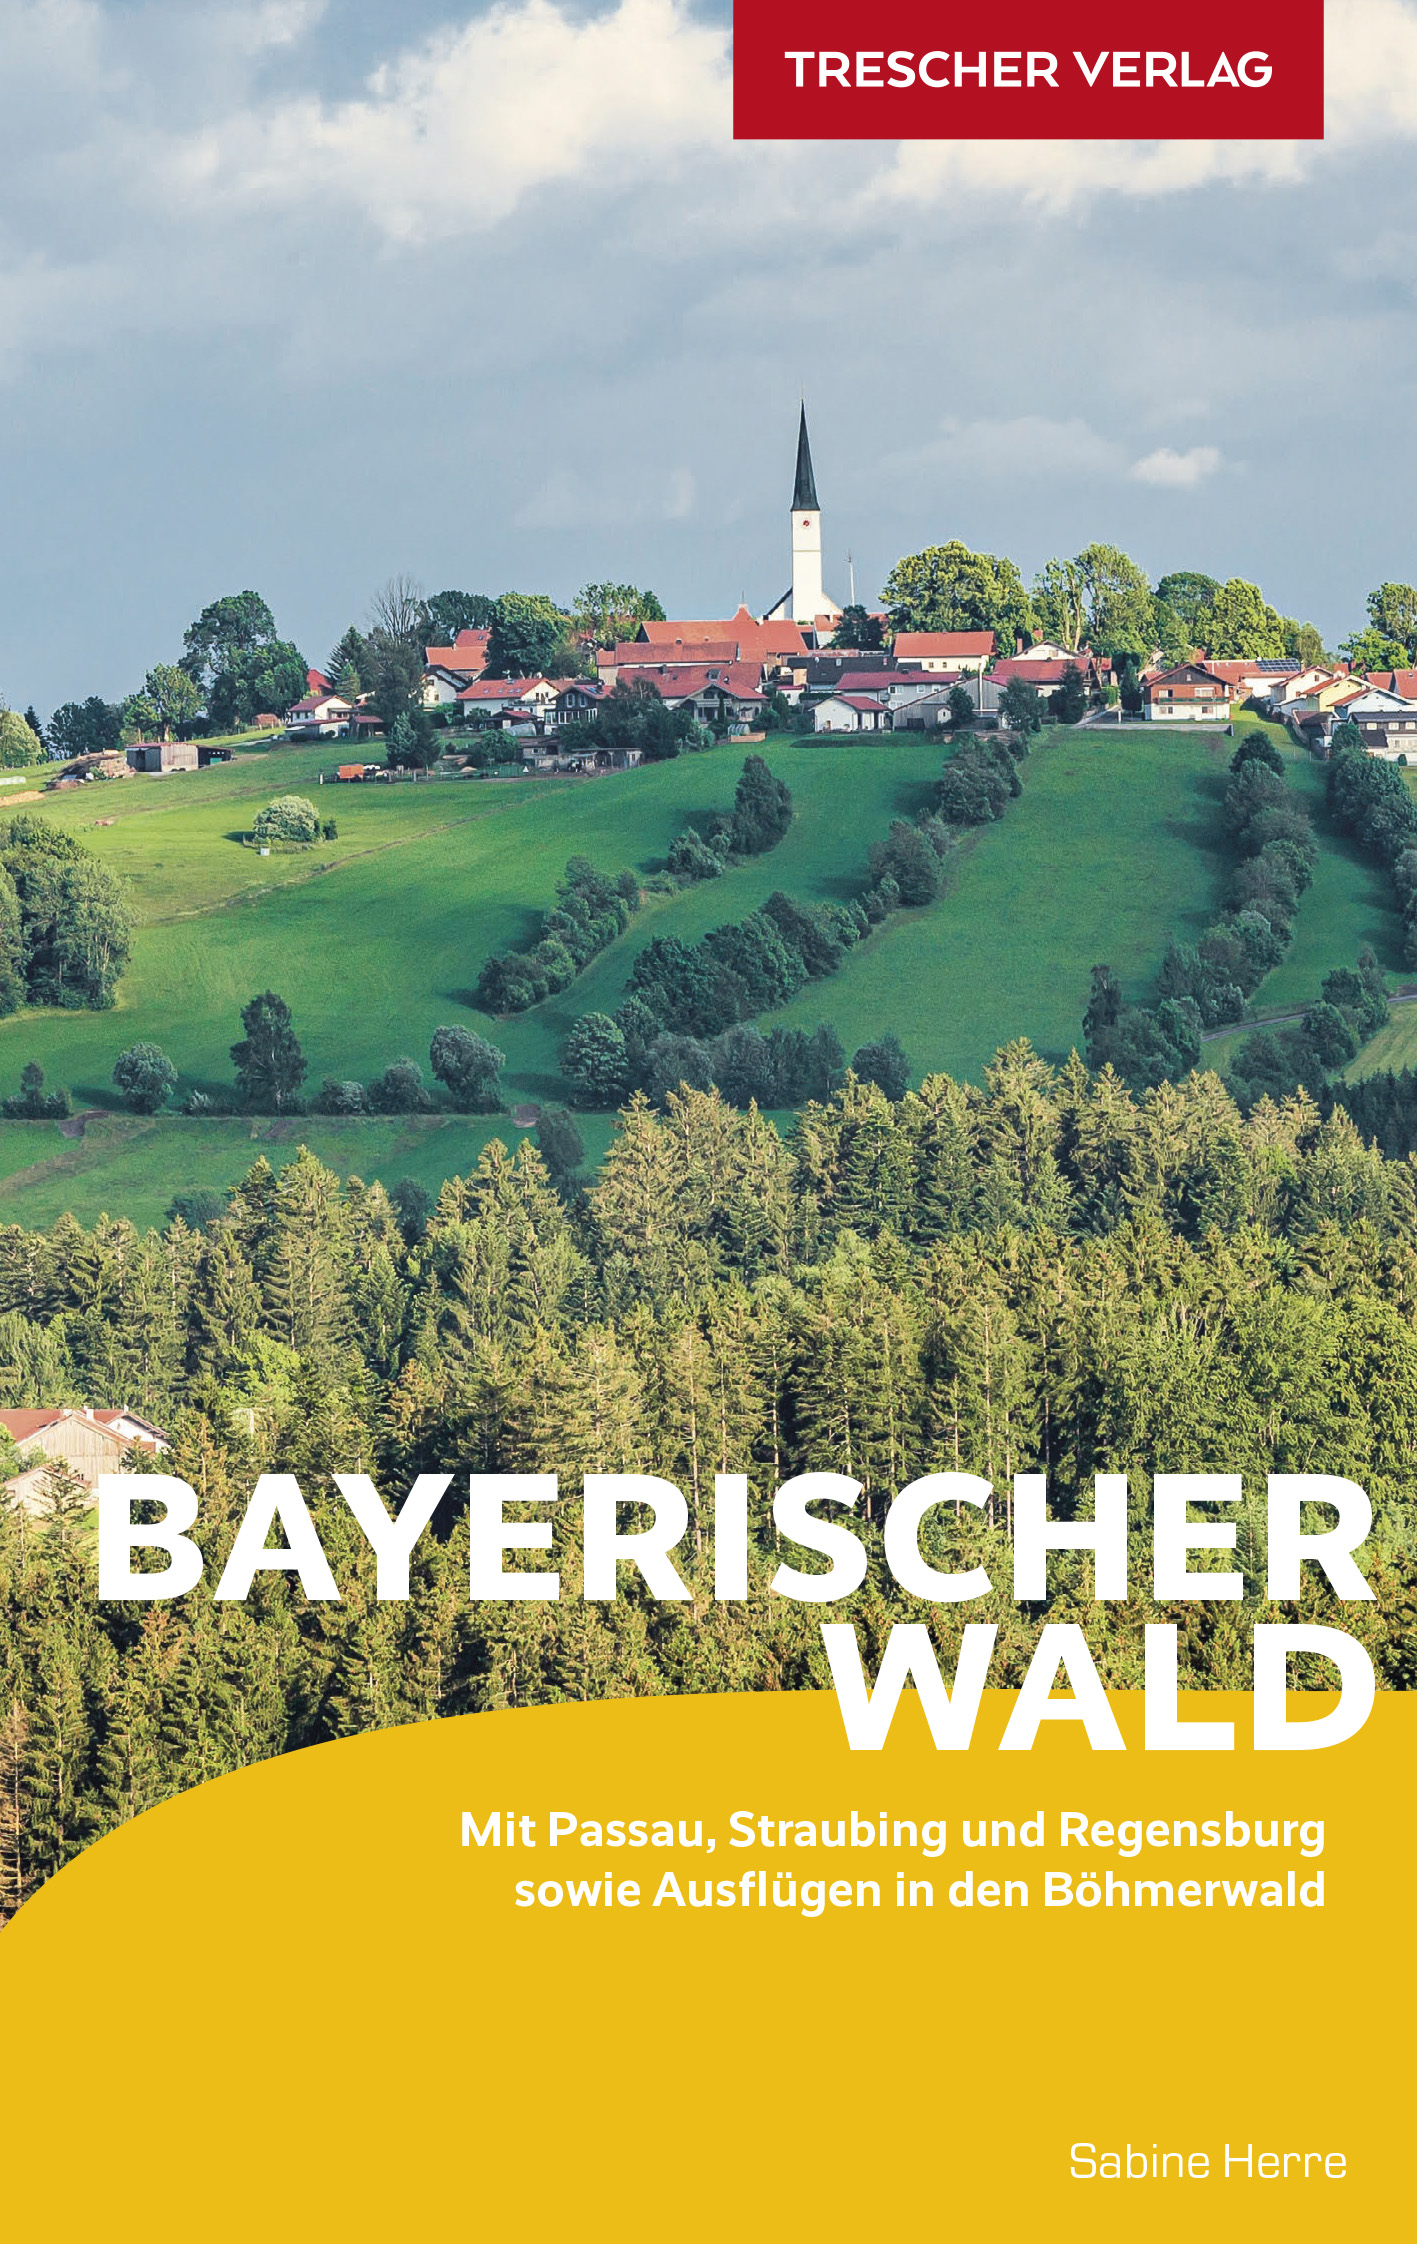 Online bestellen: Reisgids Bayerischer Wald - Beierse Woud | Trescher Verlag